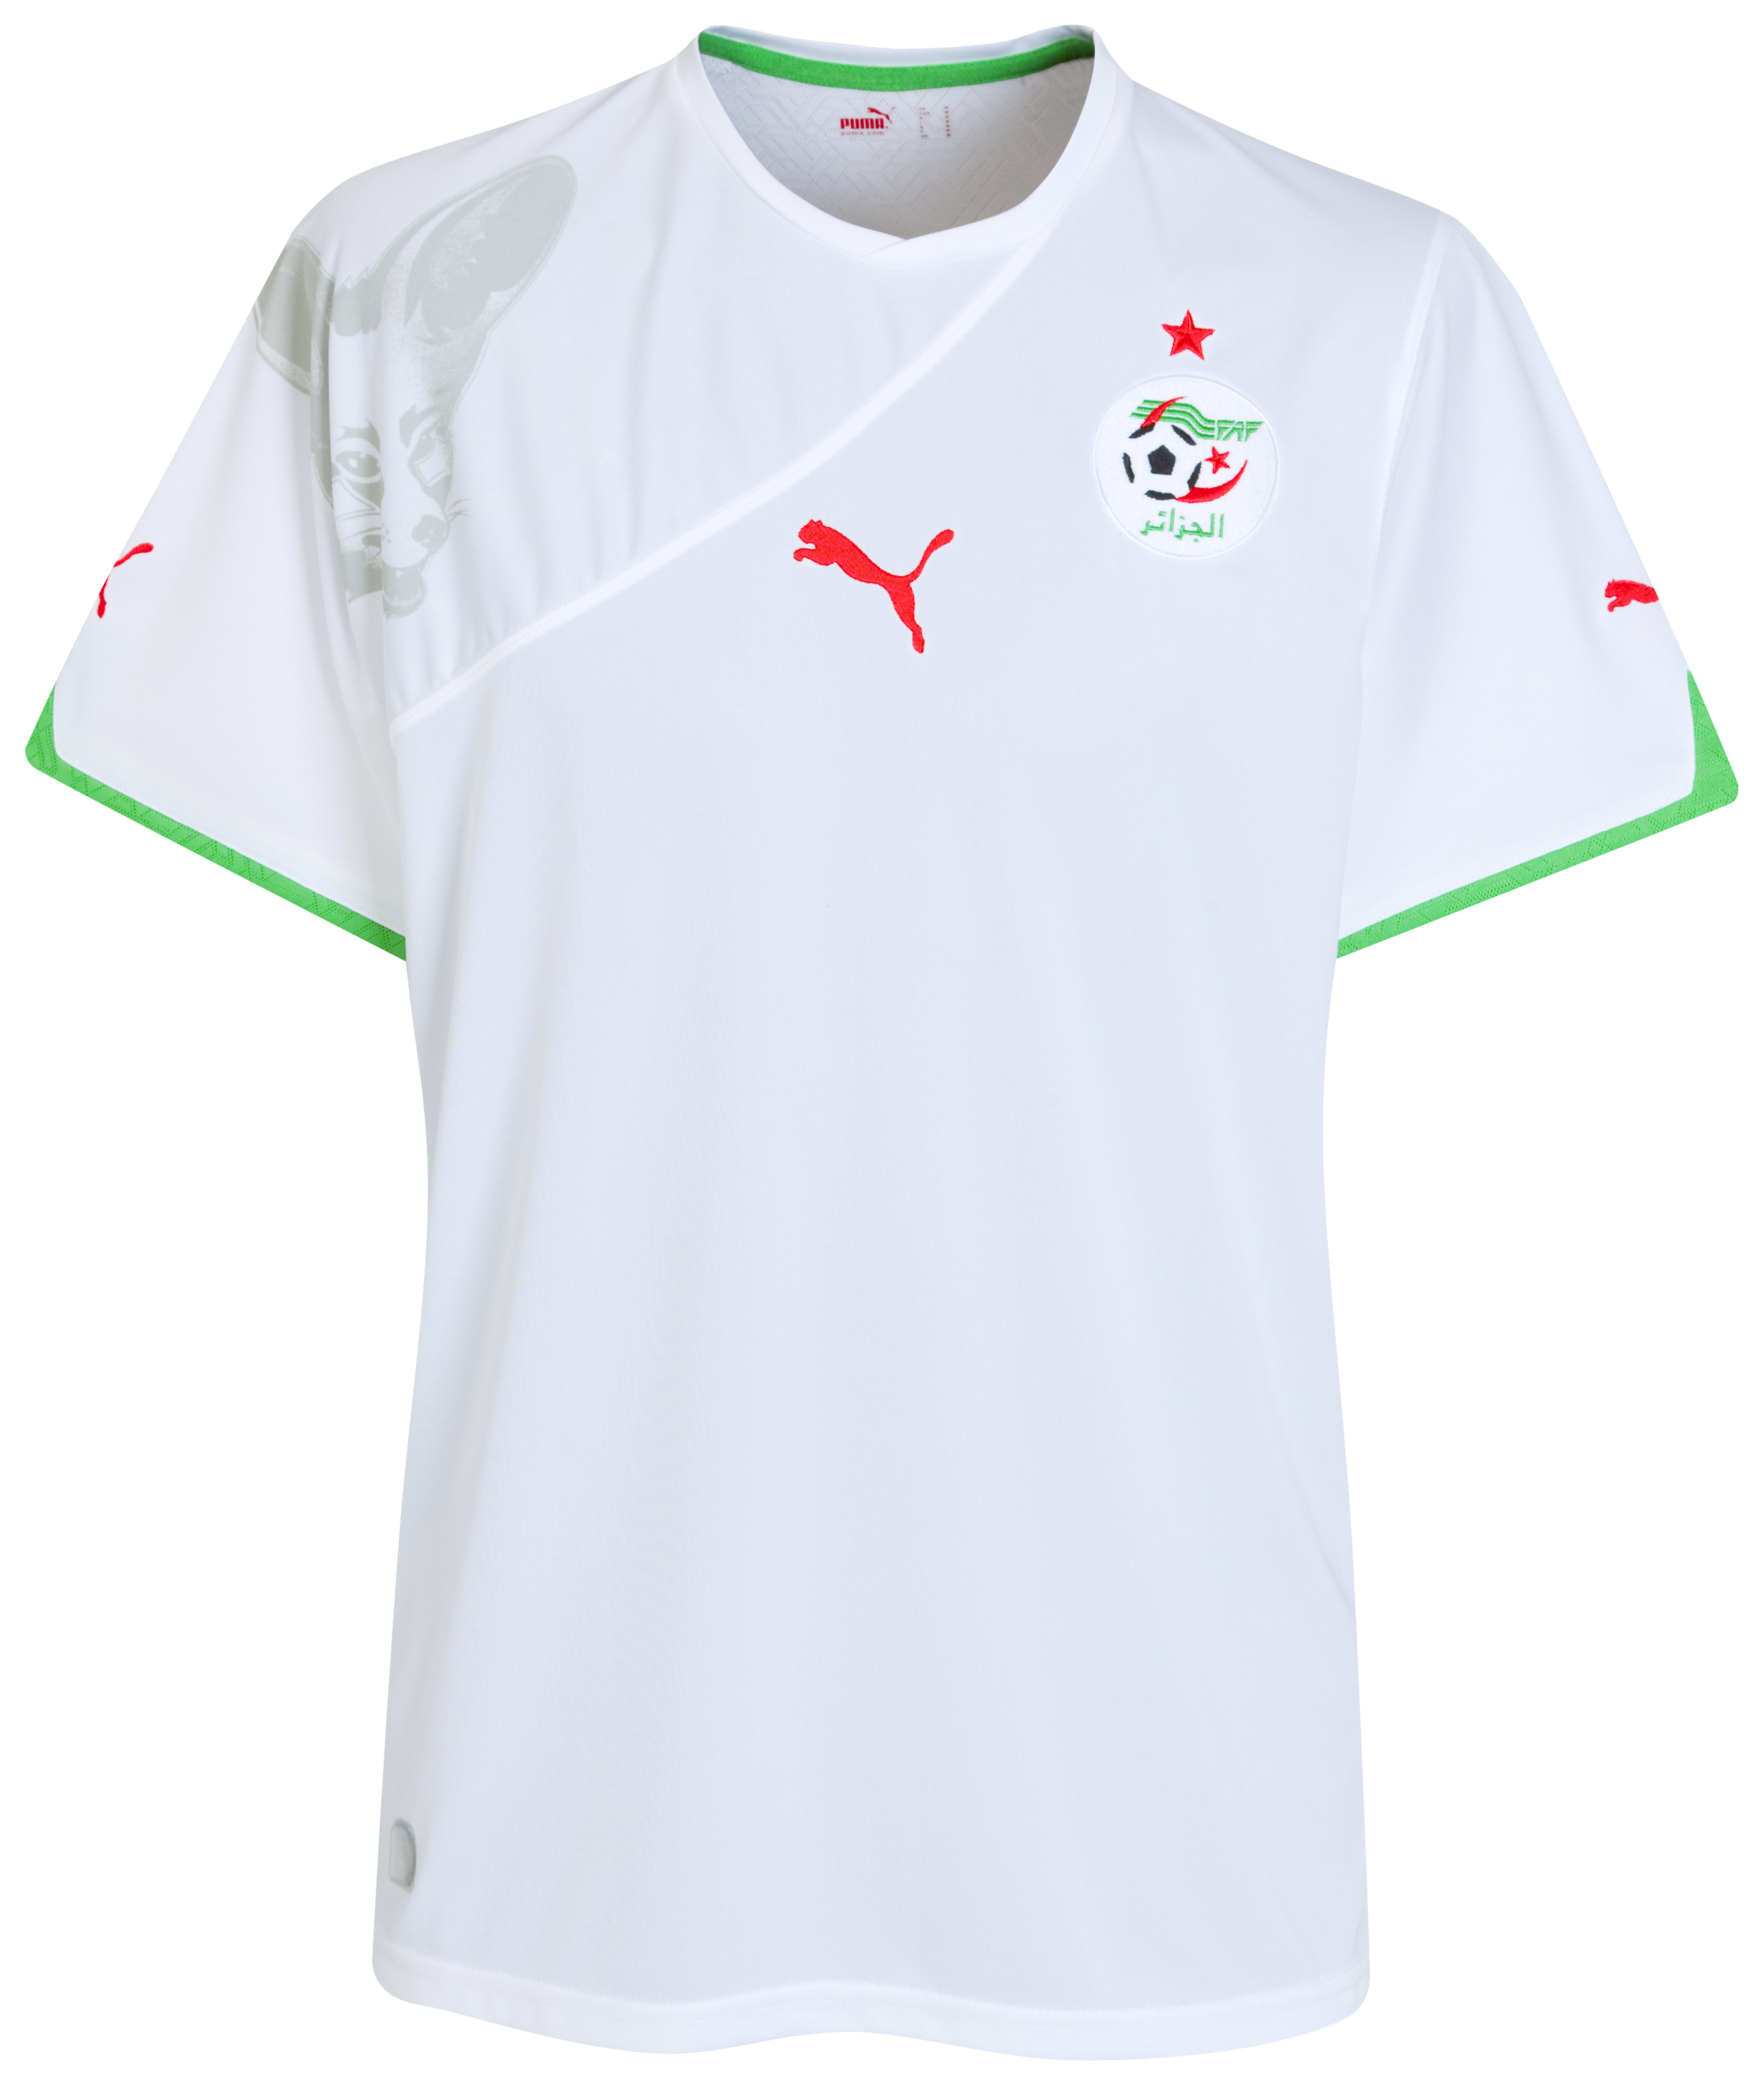 الملابس الرسمية لكأس العالم 2010 Kb-70198